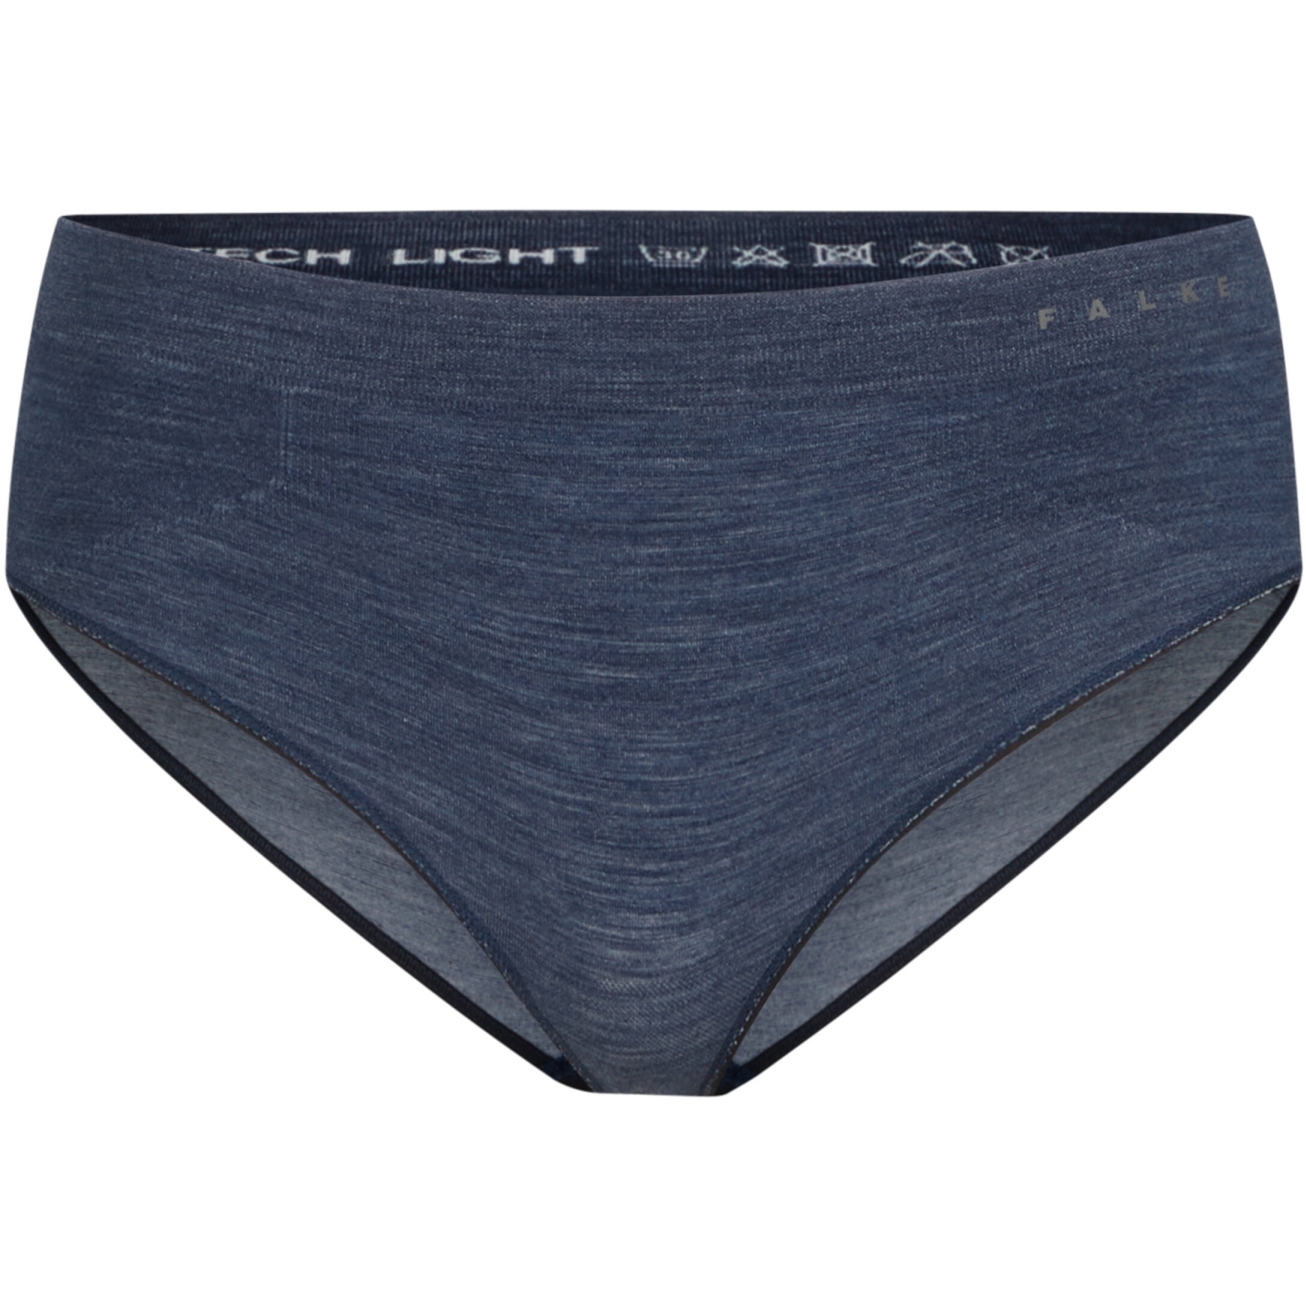 Productfoto van Falke Wool-Tech Light Trend Panties Dames - space blue 6116